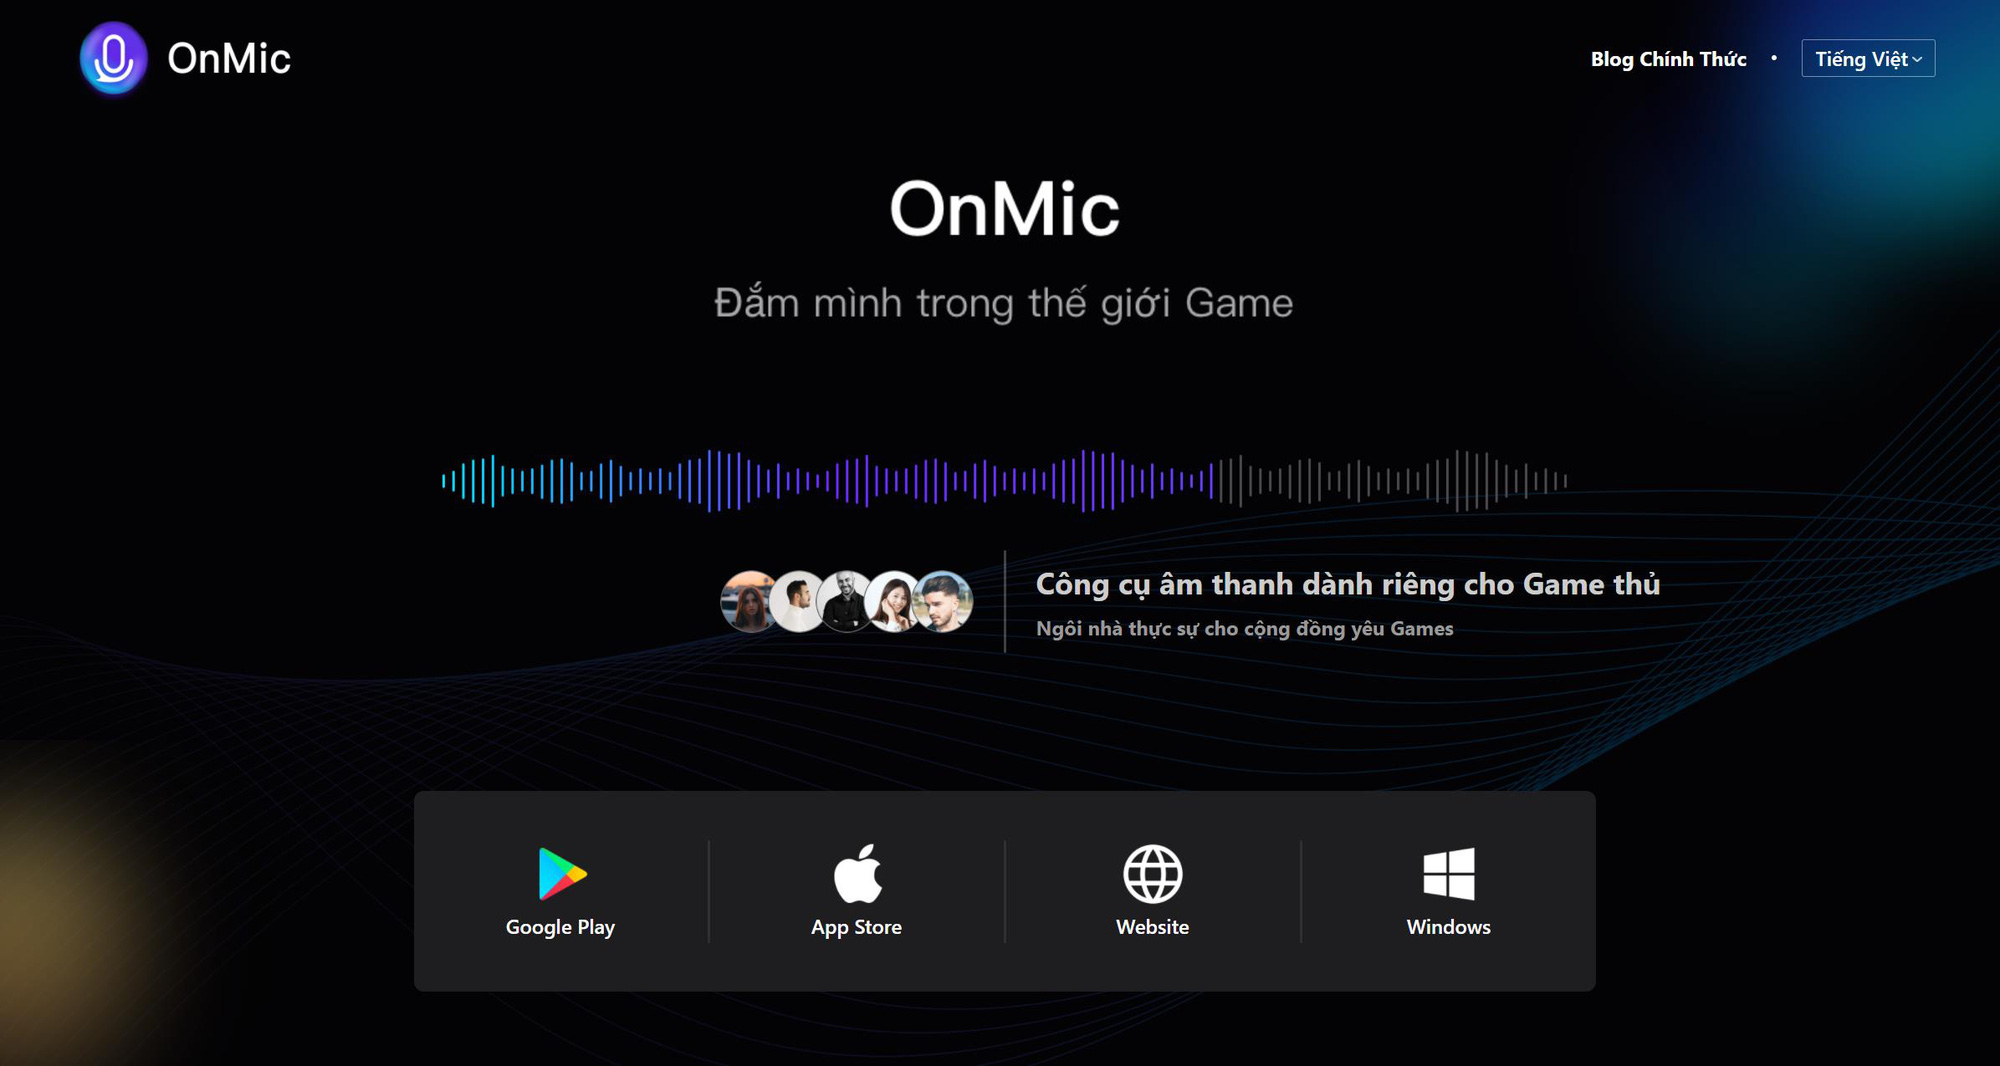 OnMic - ứng dụng top 1 BXH Việt Nam được Free Fire đề xuất chính thức tới game thủ - Ảnh 3.